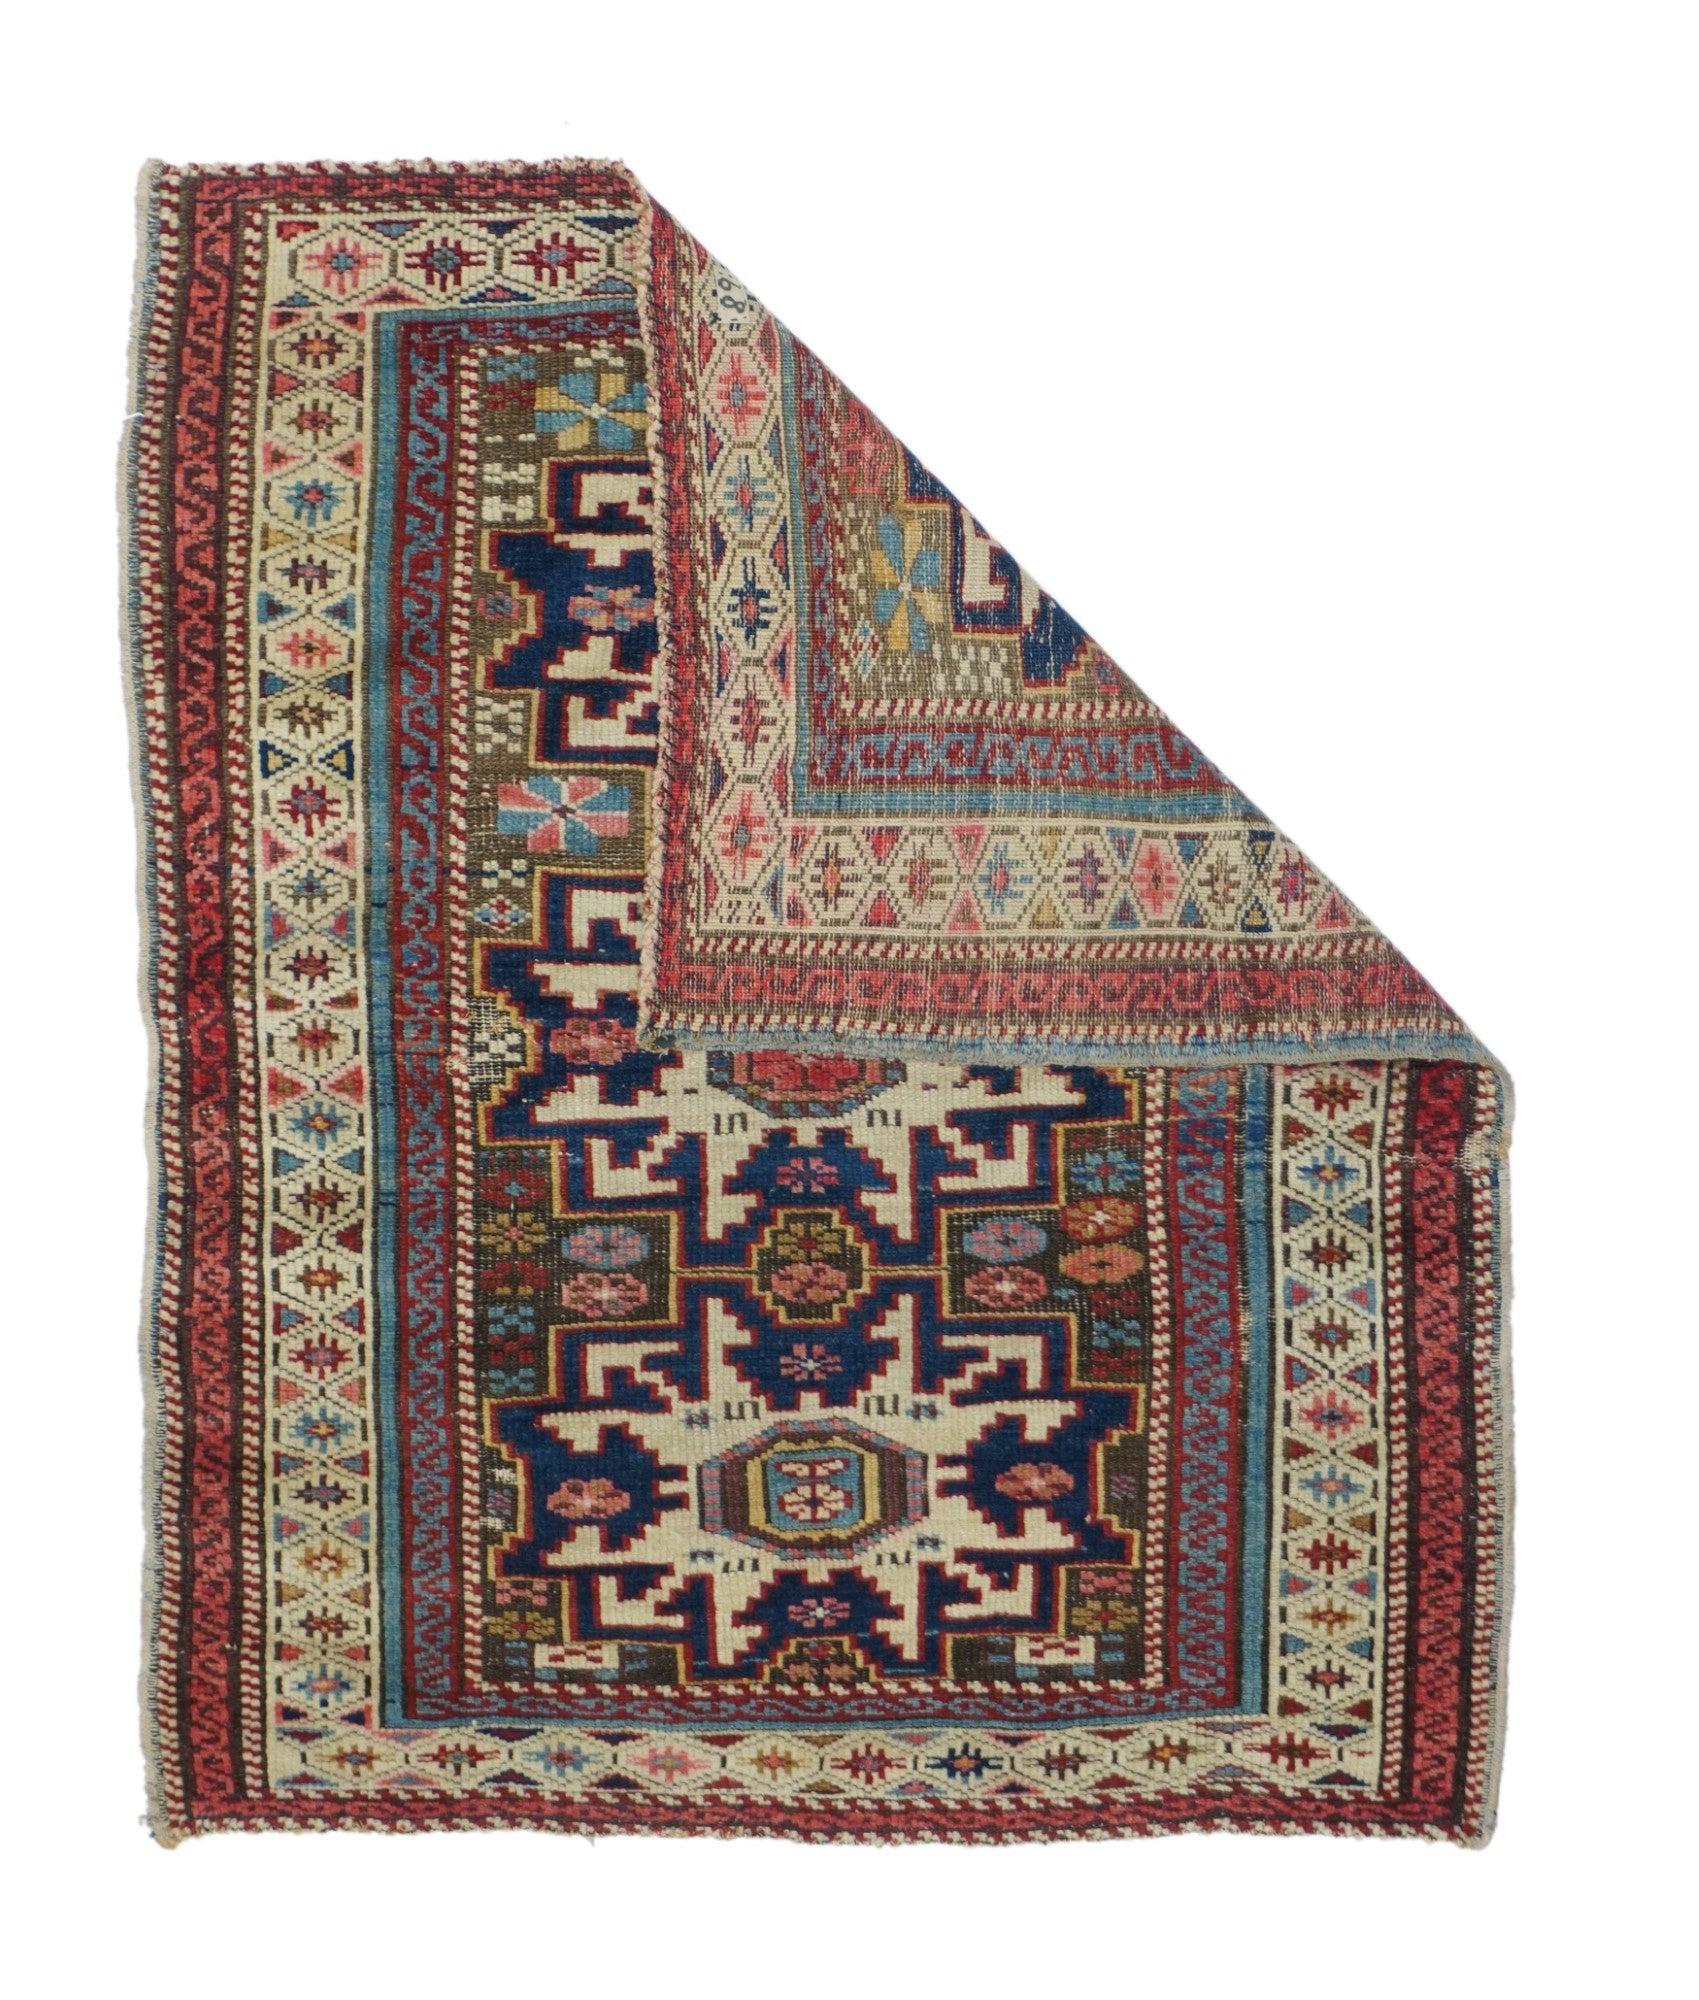 Schirwan-Teppich, Bodenbelag, der in der Region Schirwan in Aserbaidschan im südöstlichen Kaukasus handgefertigt wird. Mit Ausnahme einer Gruppe von Teppichen, die in der Nähe von Baku geknüpft wurden, finden sich die meisten Schirwanen in kleinen